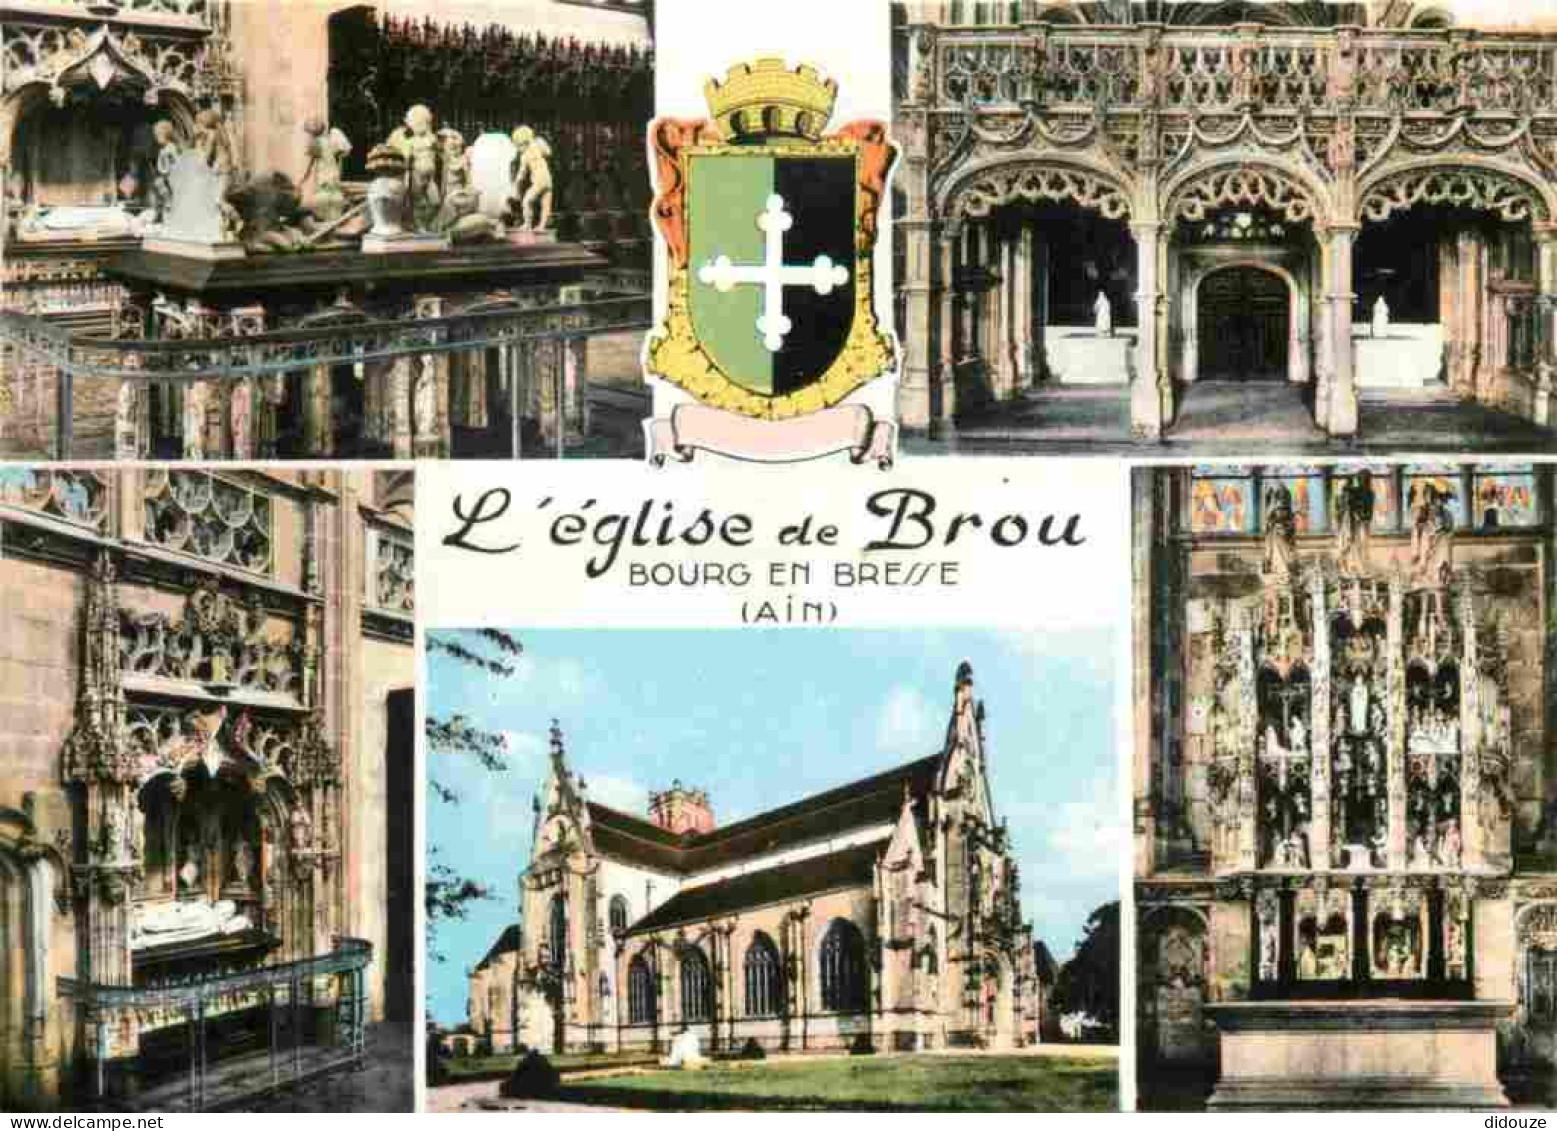 01 - Bourg En Bresse - Eglise De Brou - Intérieur De L'Eglise De Brou - Multivues - Mention Photographie Véritable - Car - Brou - Kirche